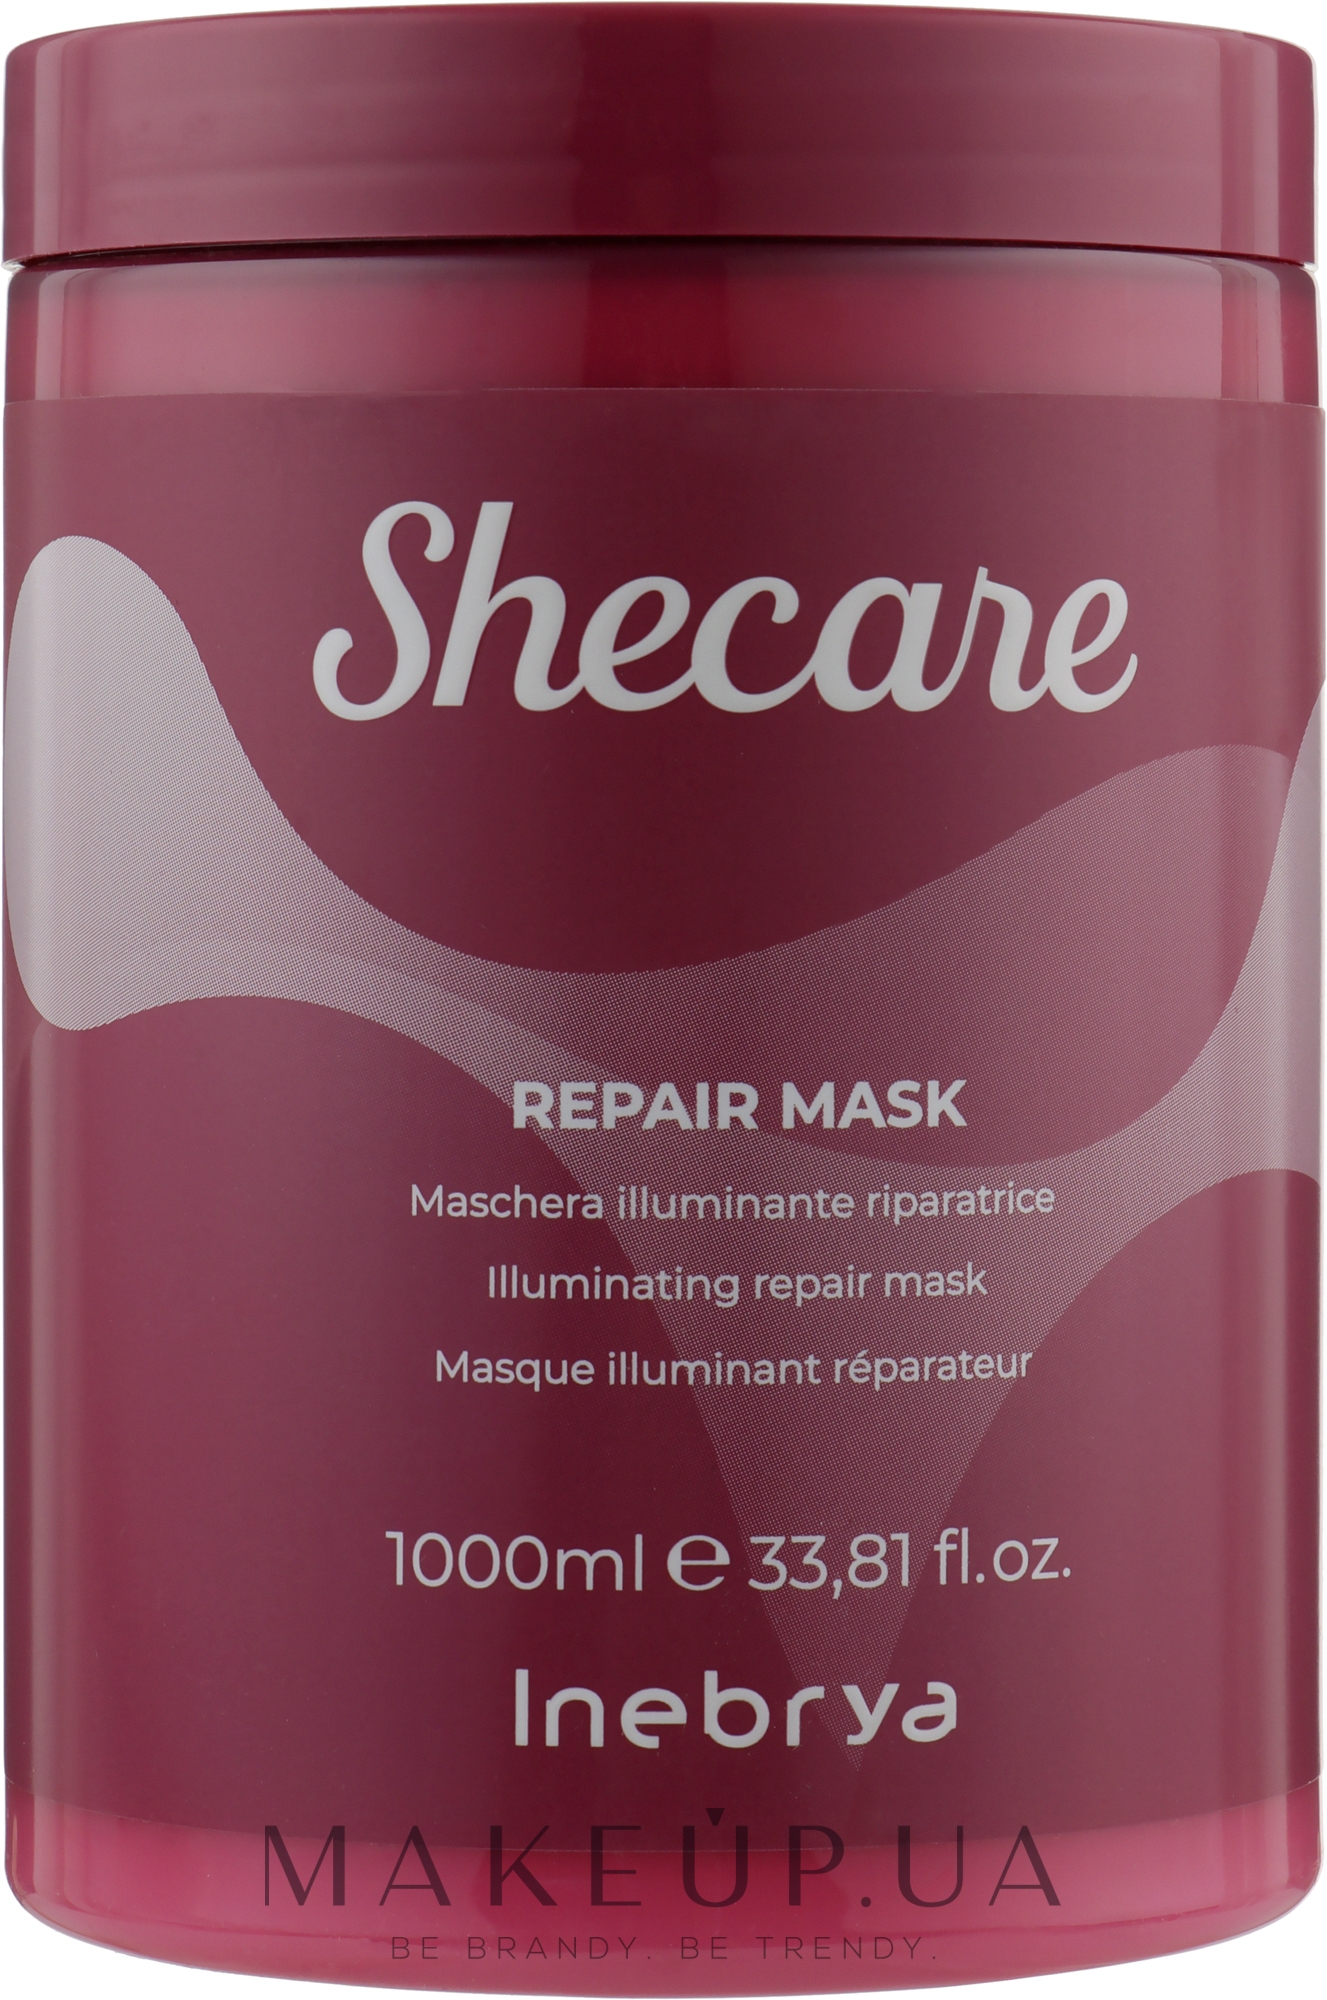 Відновлювальний маска-конструктор для волосся - Inebrya She Care Repair Mask — фото 1000ml